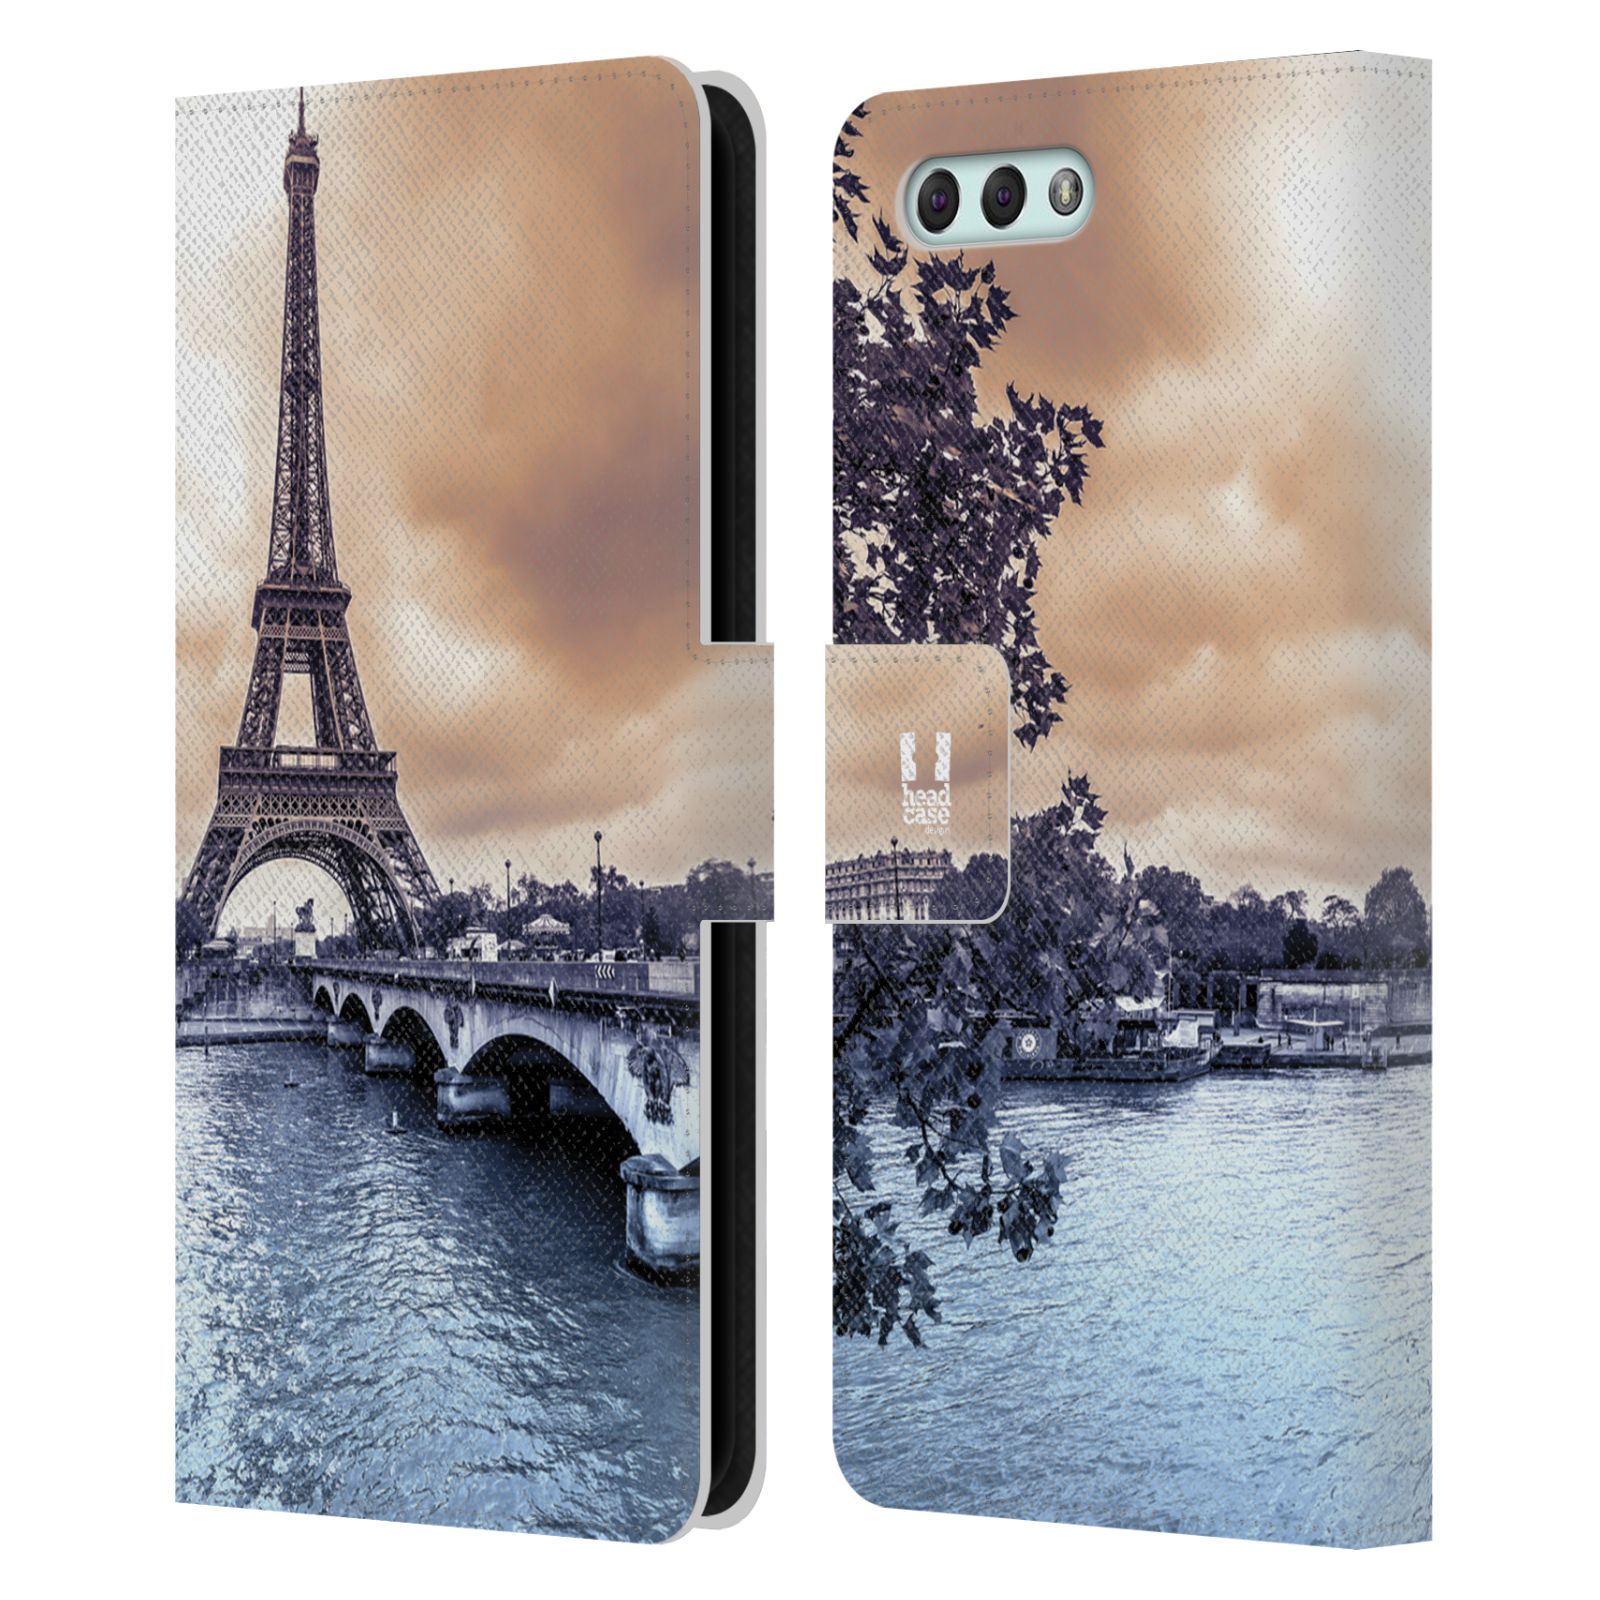 Pouzdro pro mobil Asus Zenfone 4 ZE554KL  - Eiffelova věž Paříž - Francie